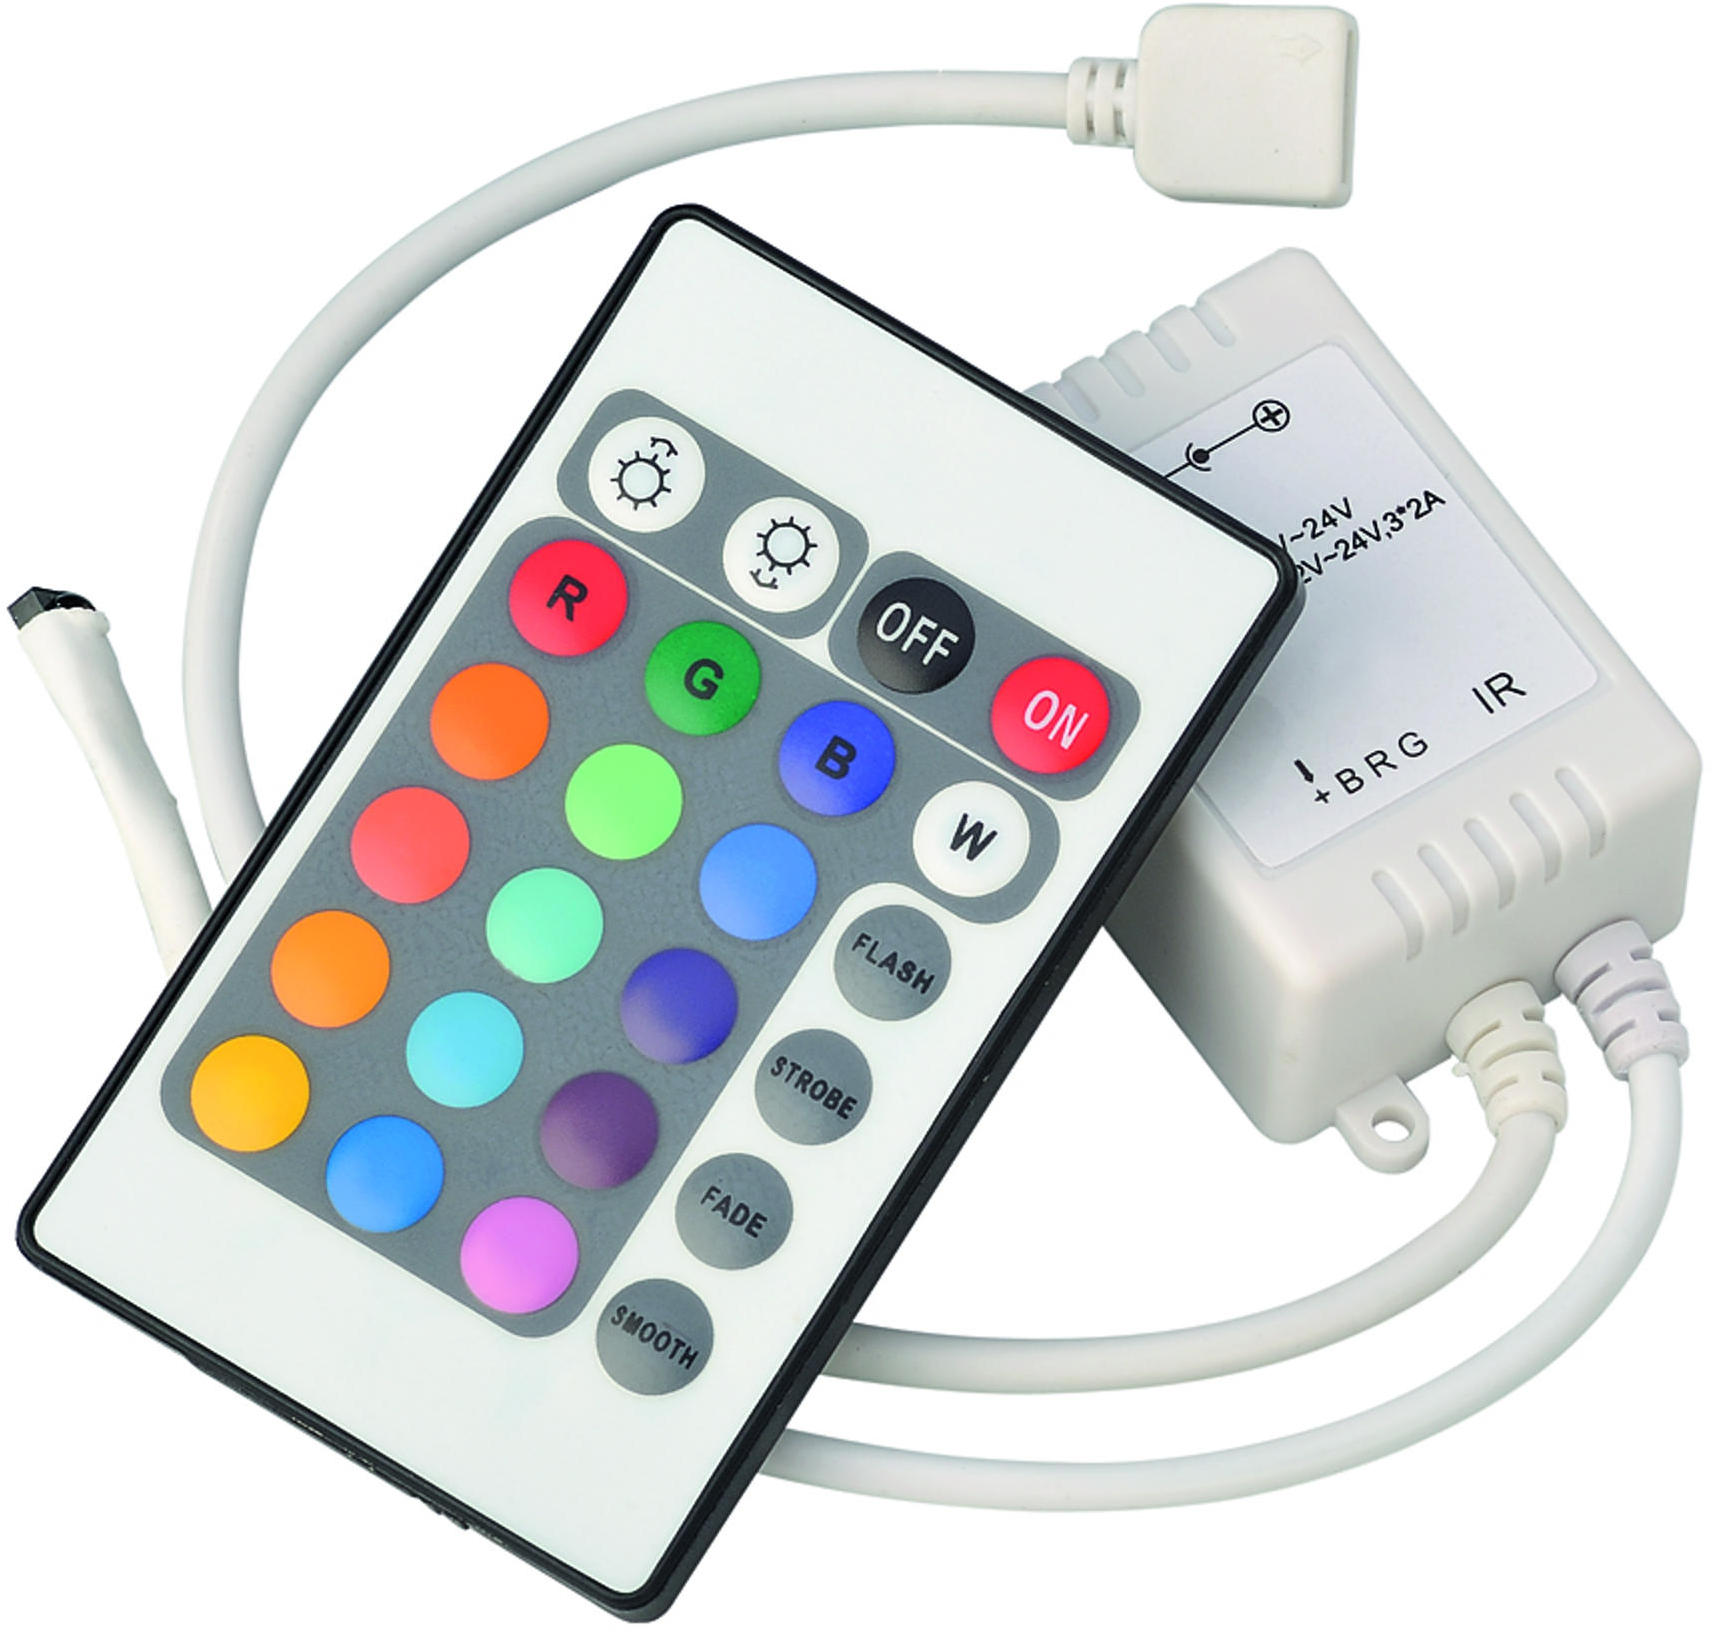 12V / 24V IR Controller And Remote - RGB - LEDFR4 